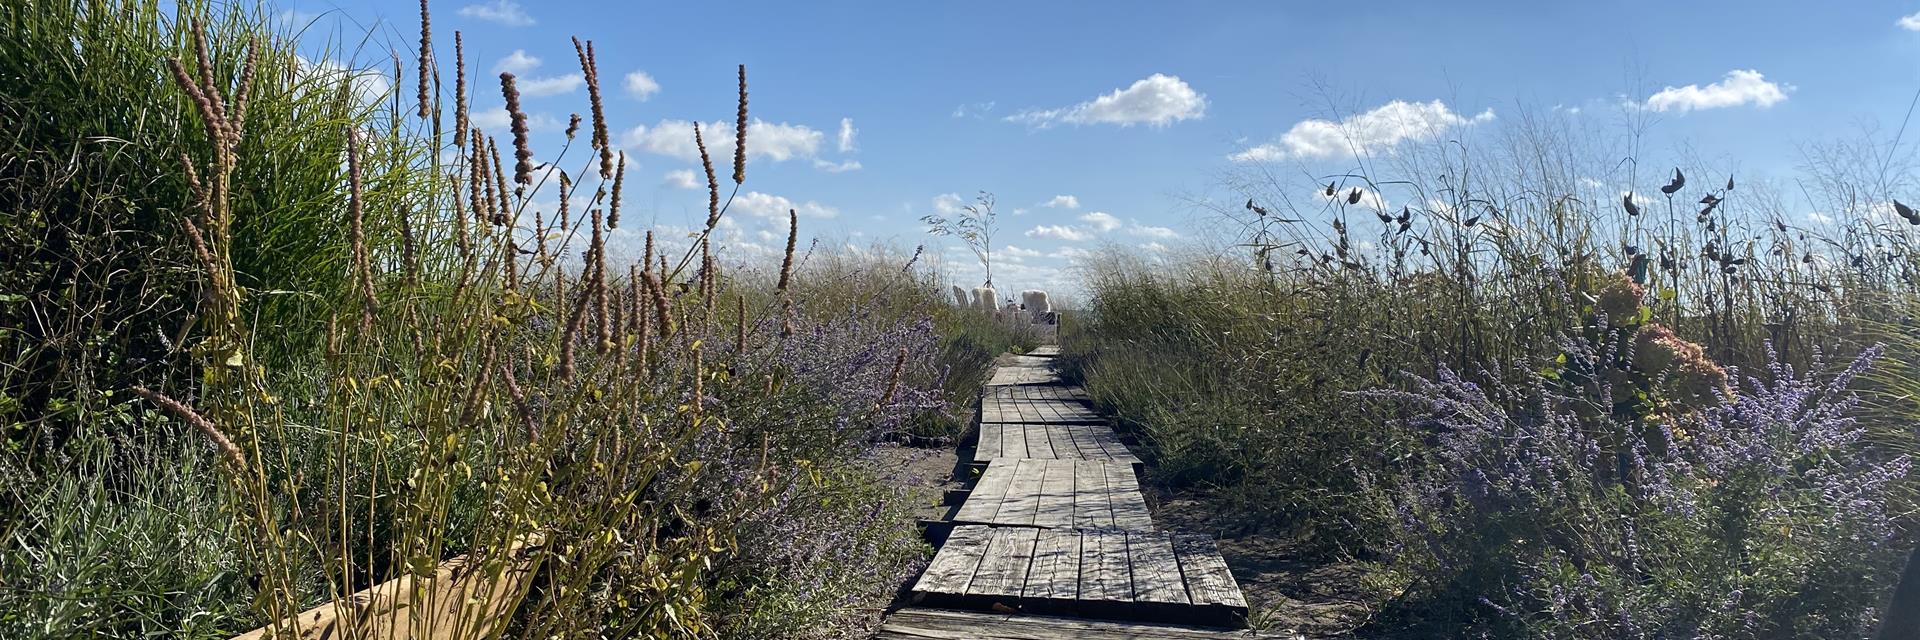 Walkway through a lavender garden toward the beach.